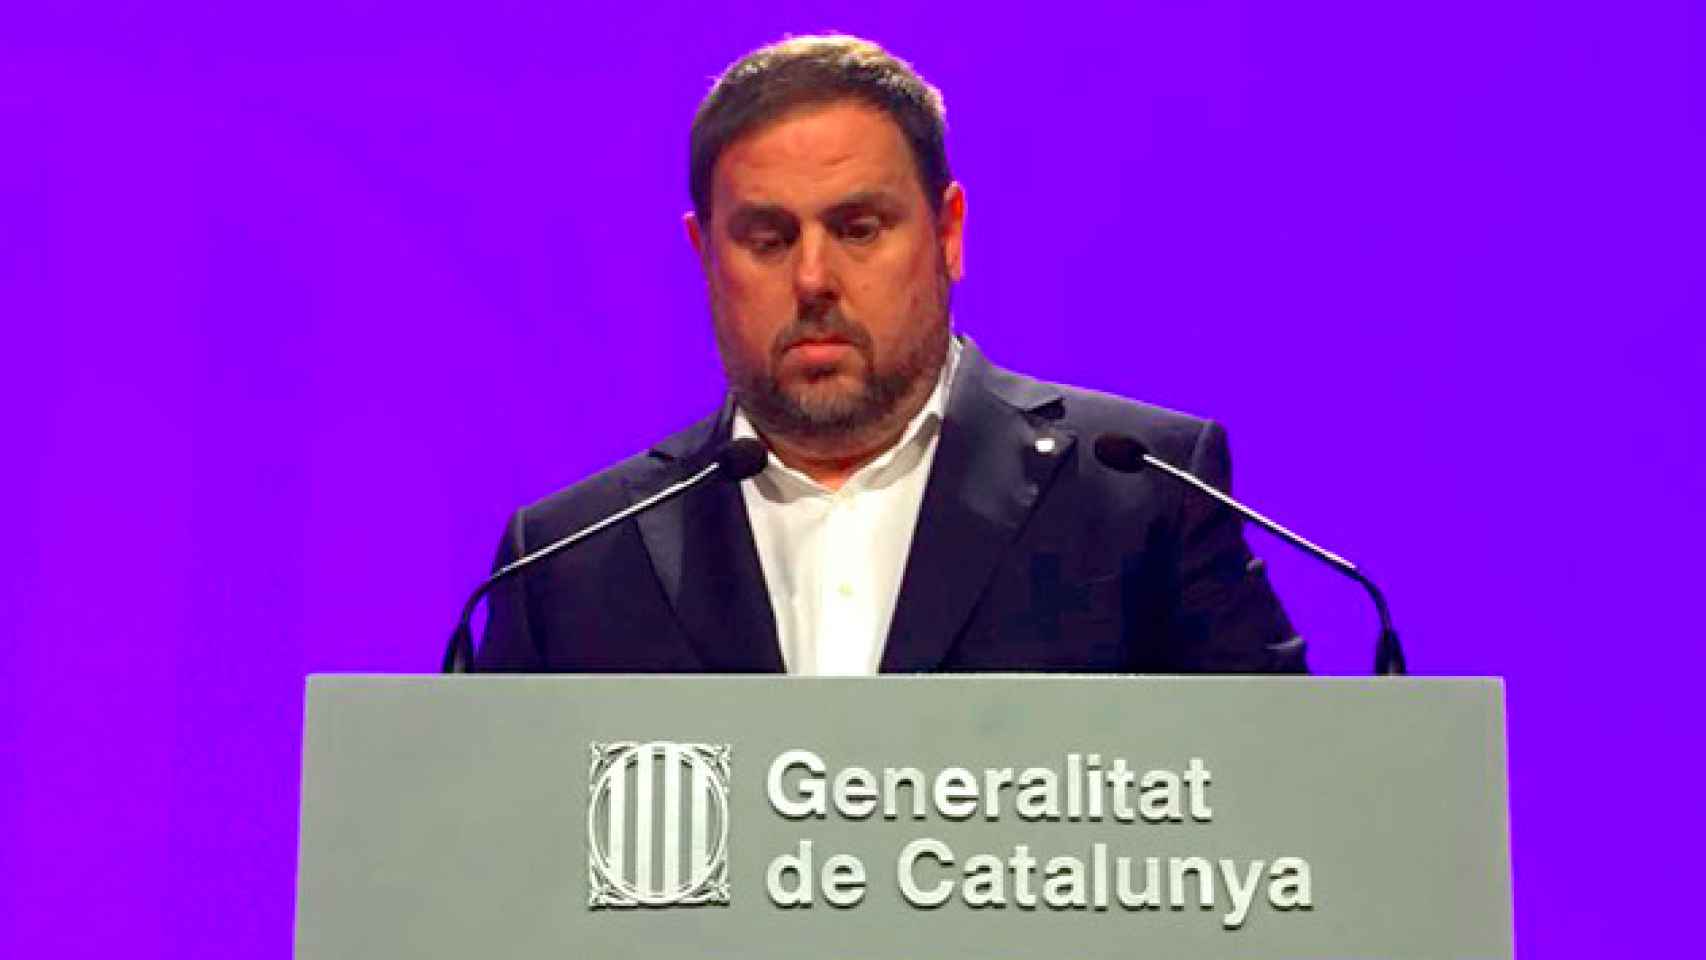 El vicepresidente Oriol Junqueras durante la rueda de prensa en el Palau de la Generalitat / CG